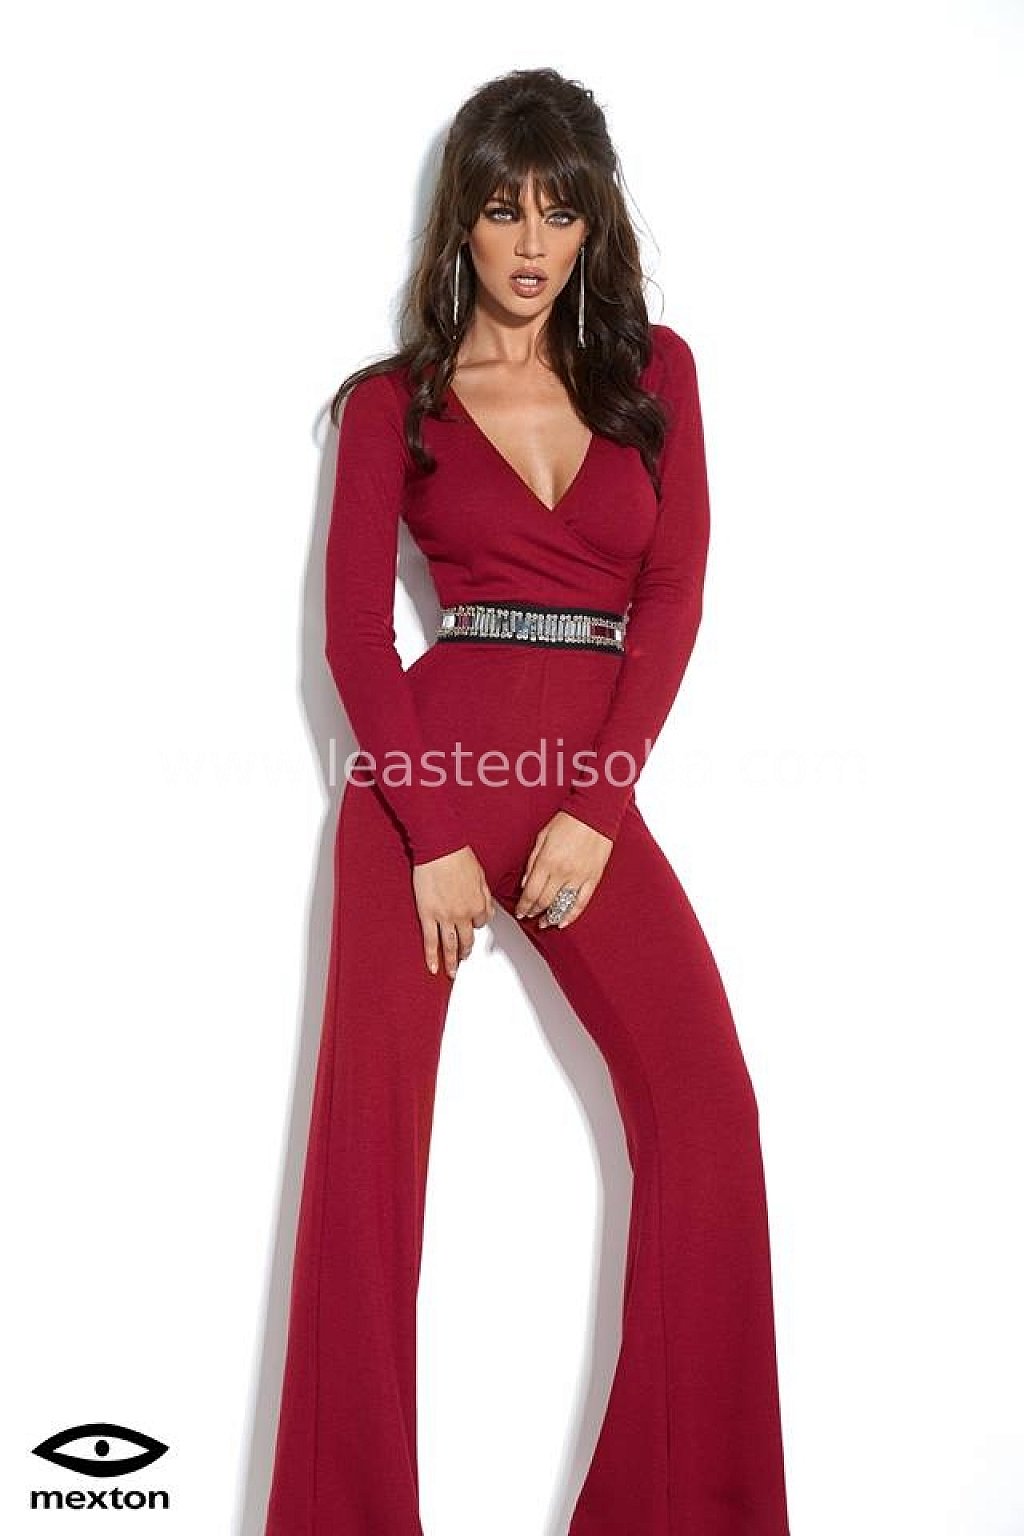 Tuta rossa elegante con pantalone svasato e cintura gioiello - Le Aste di  Sohà